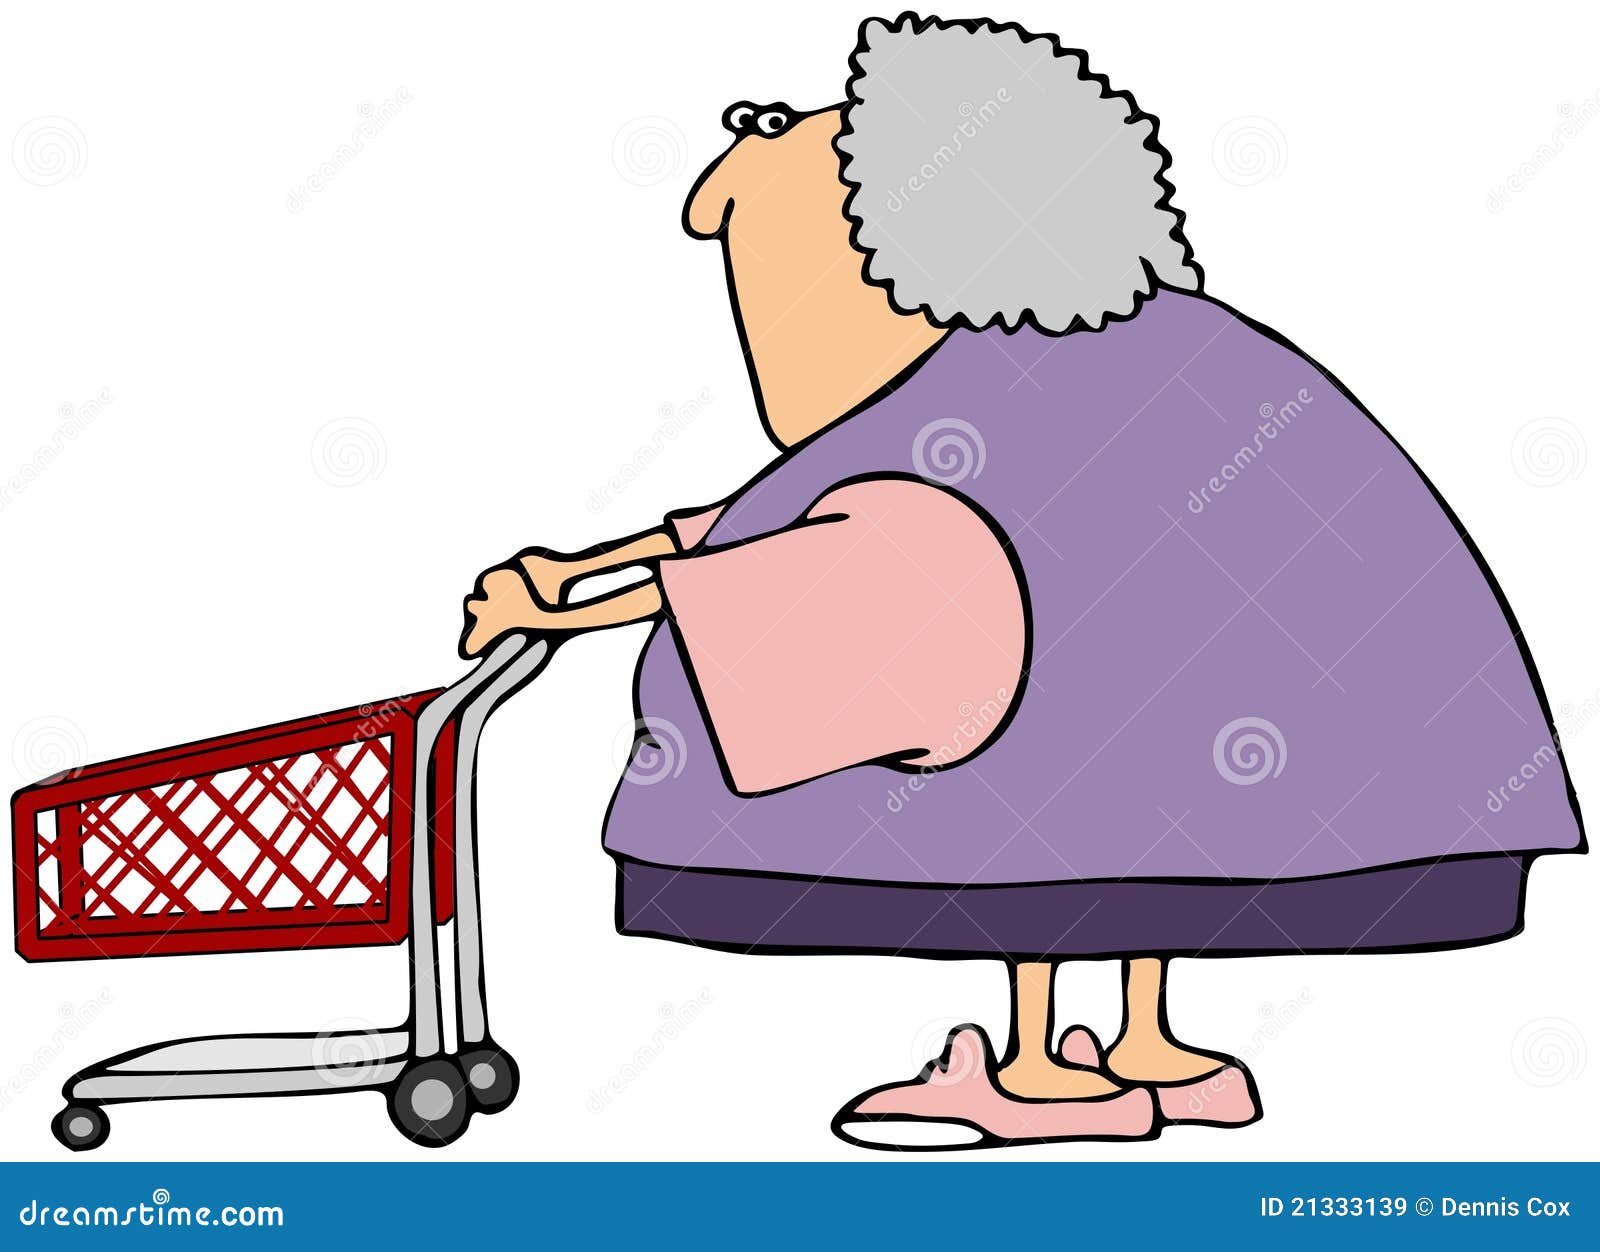 Woman Shopper stock illustration. Illustration of shopper - 21333139